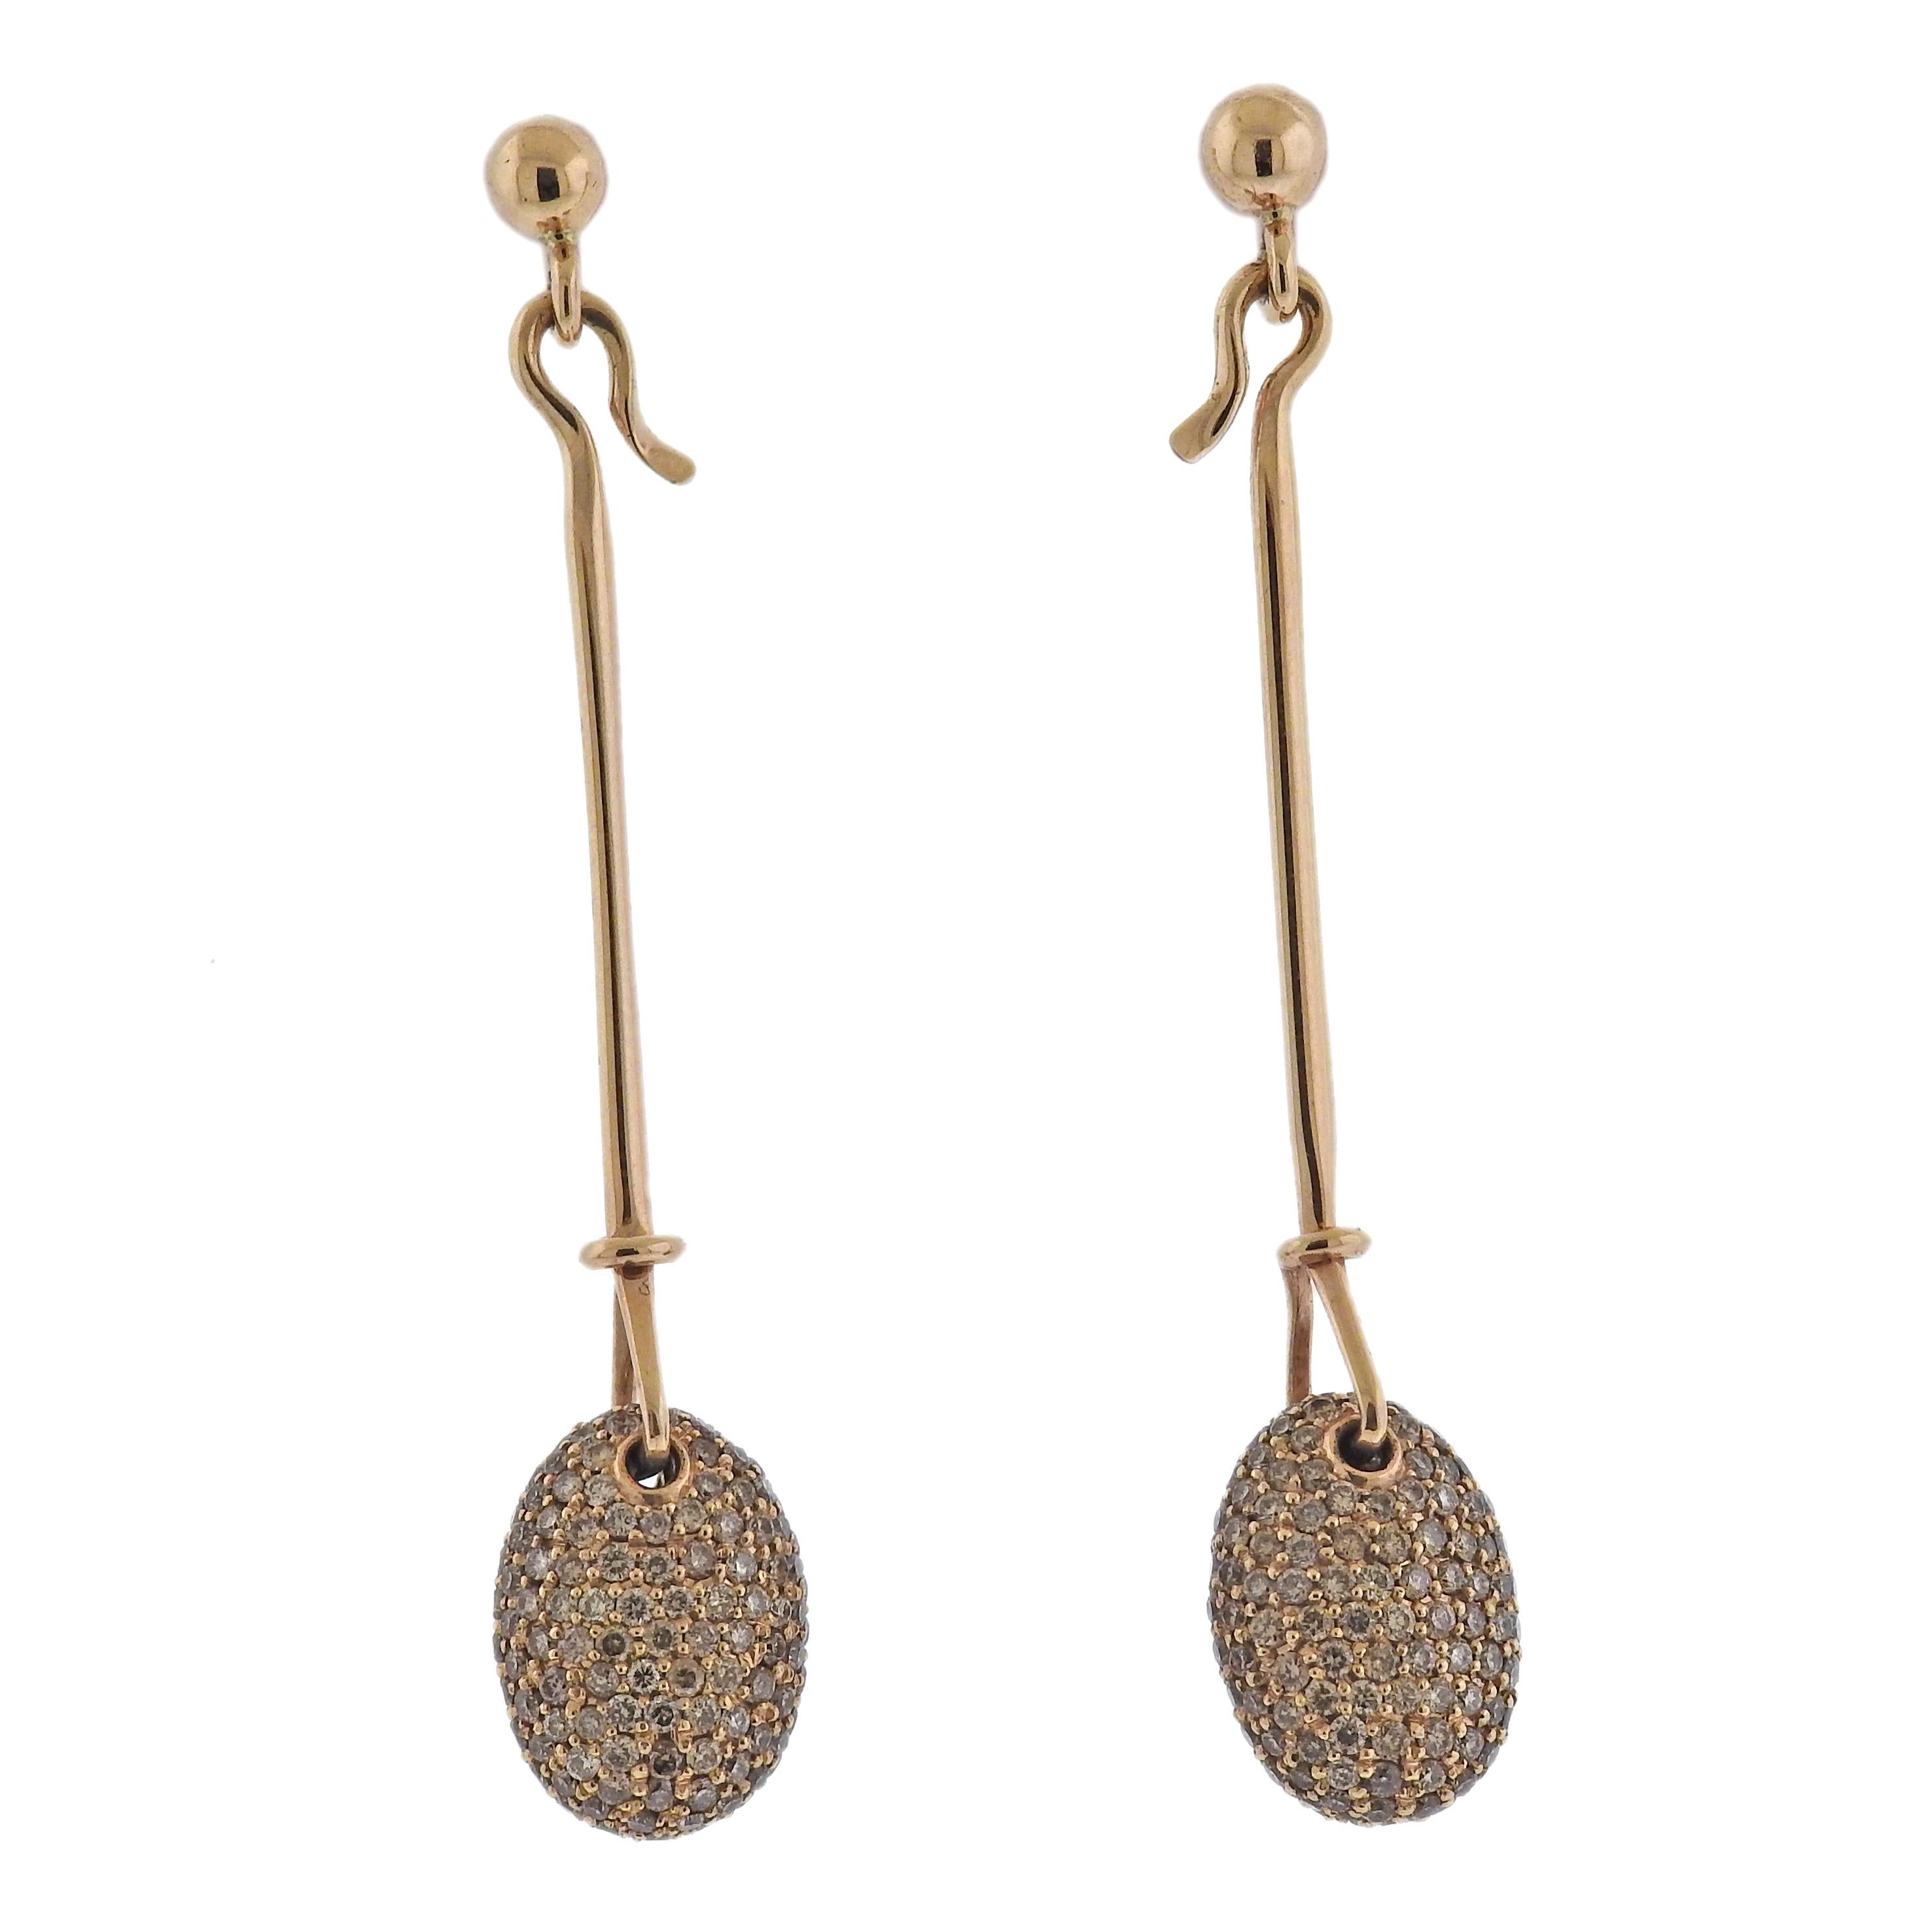 Brand new Georg Jensen 18k rose gold Dew Drop earrings, with approx. 2.37ctw cinnamon fancy/VS diamonds. Earrings are 60mm long. Model # 3518406. Marked: GJ mark, 750. Weight - 9.5 grams.